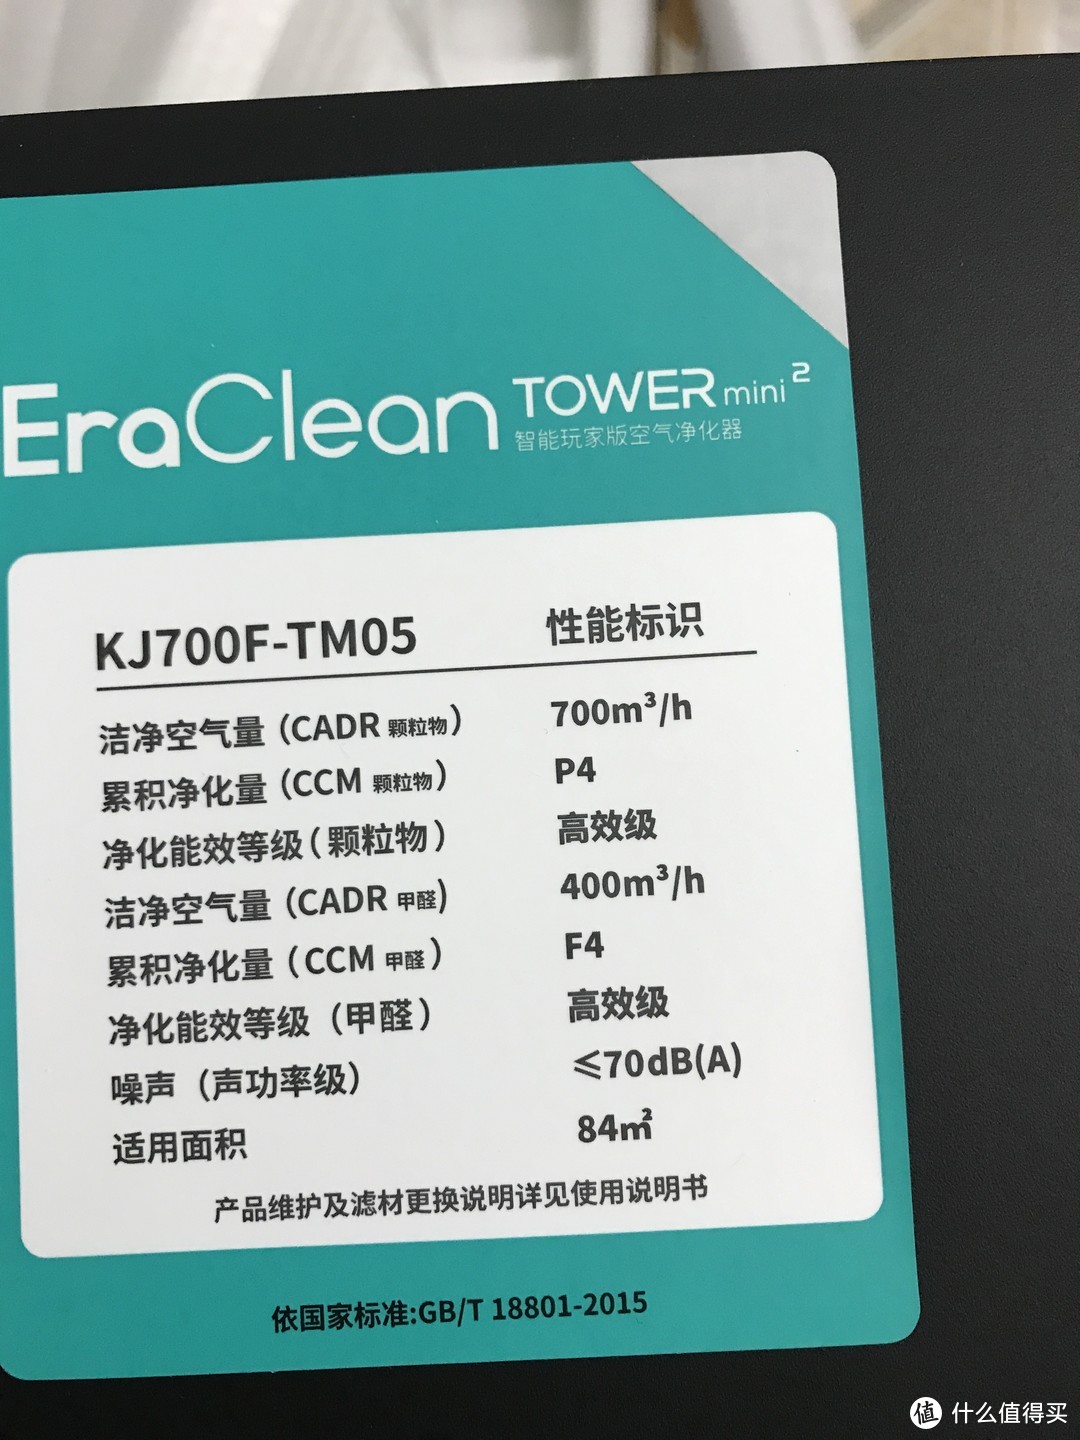 强效净化空气----【EraClean Tower mini2玩家版空气净化器】测评报告